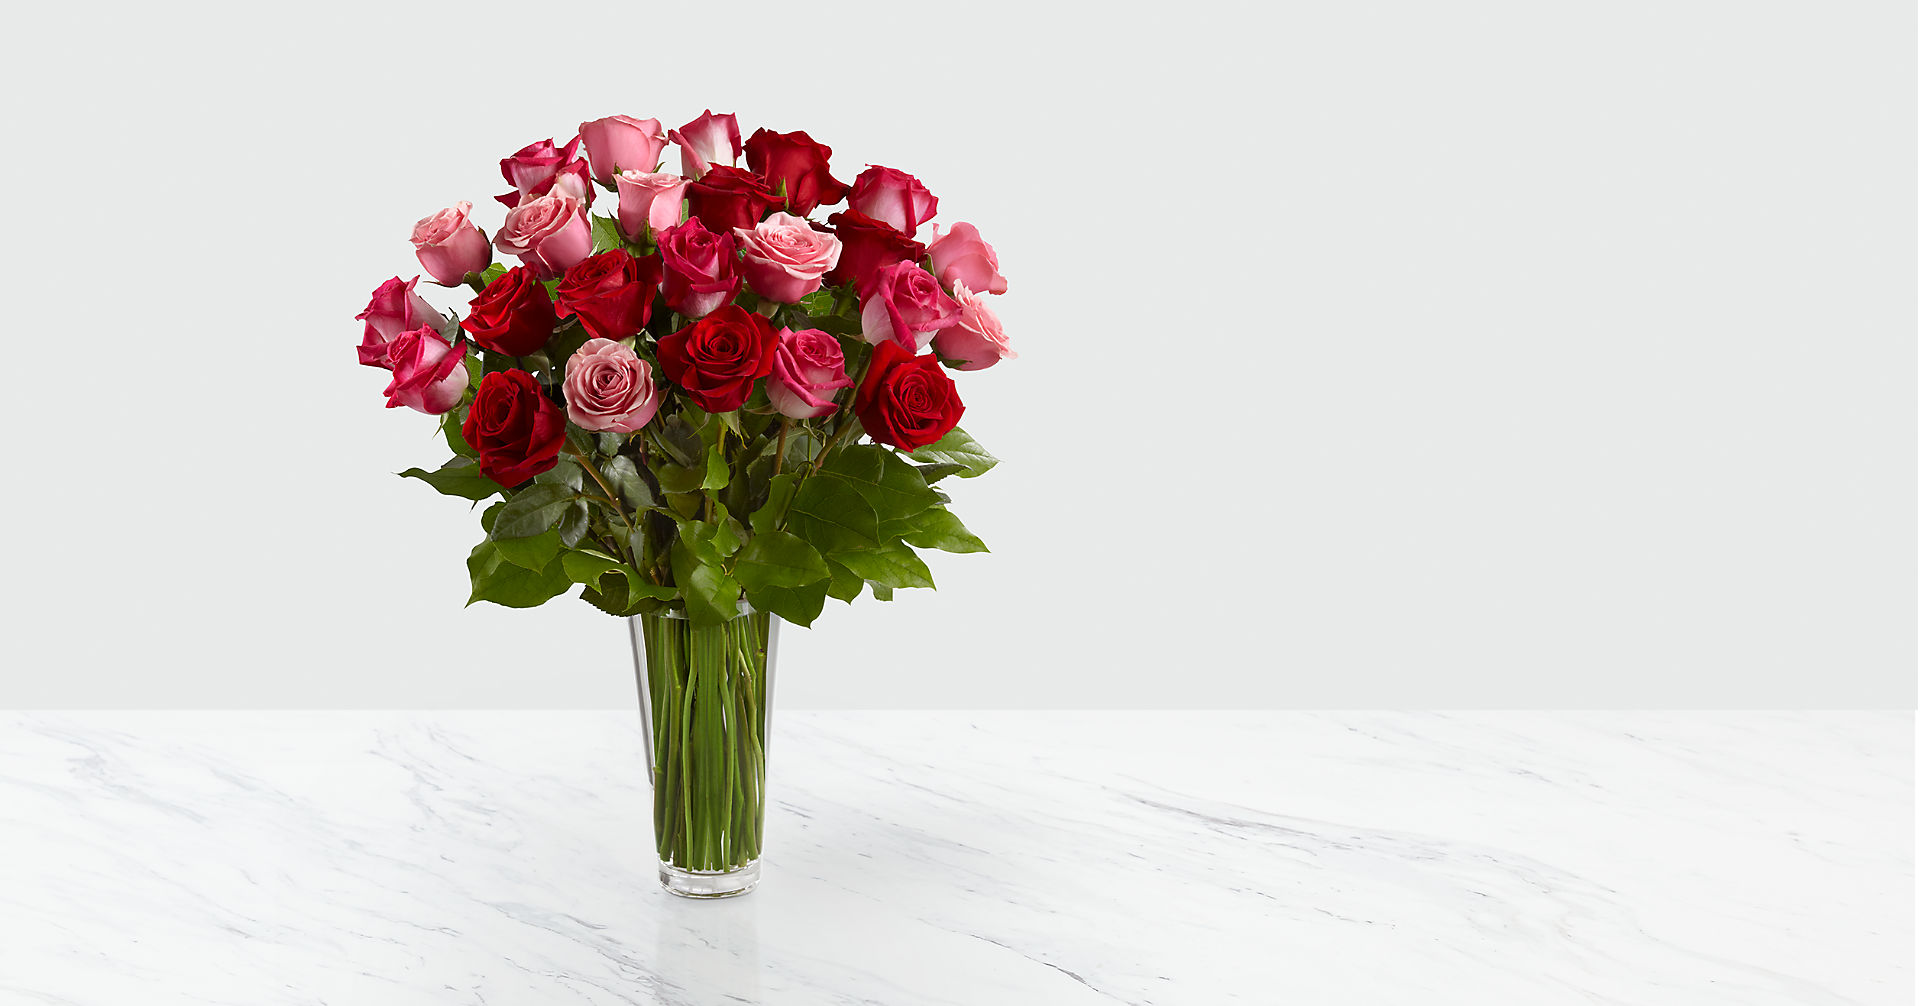 The True Romance - Rose Bouquet Flower Bouquet